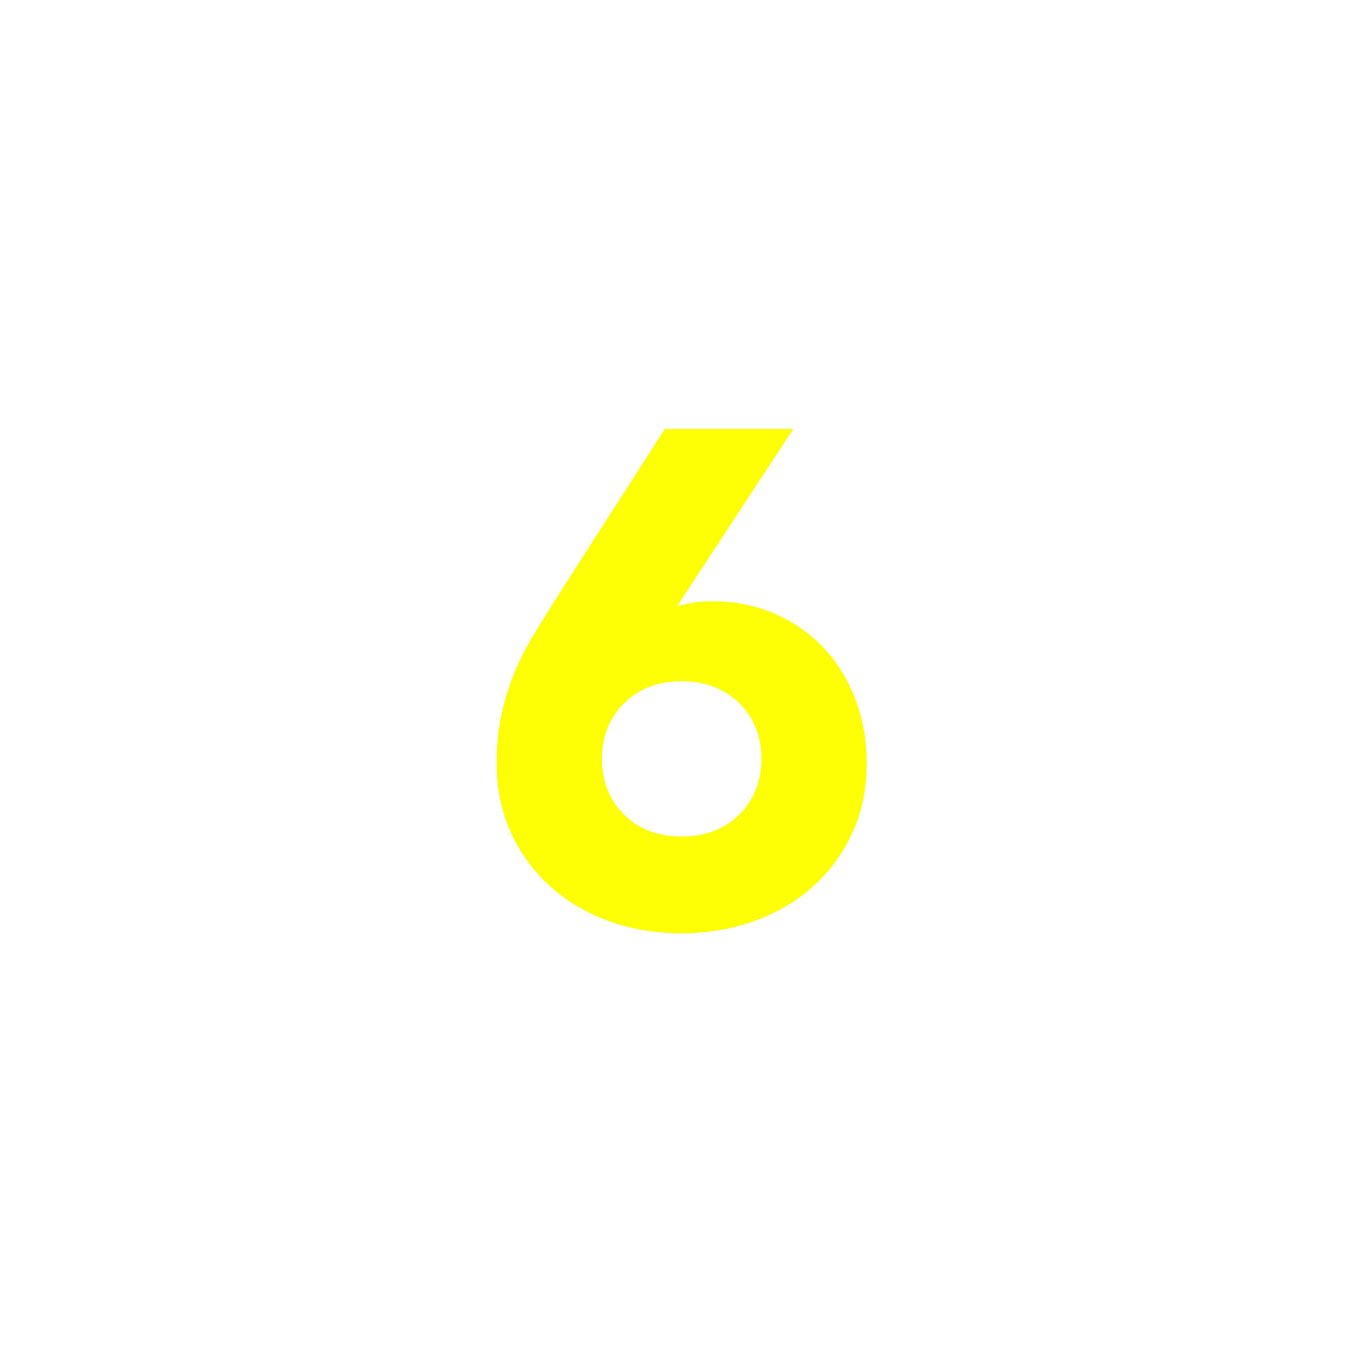 6-Yellow_Num.jpg